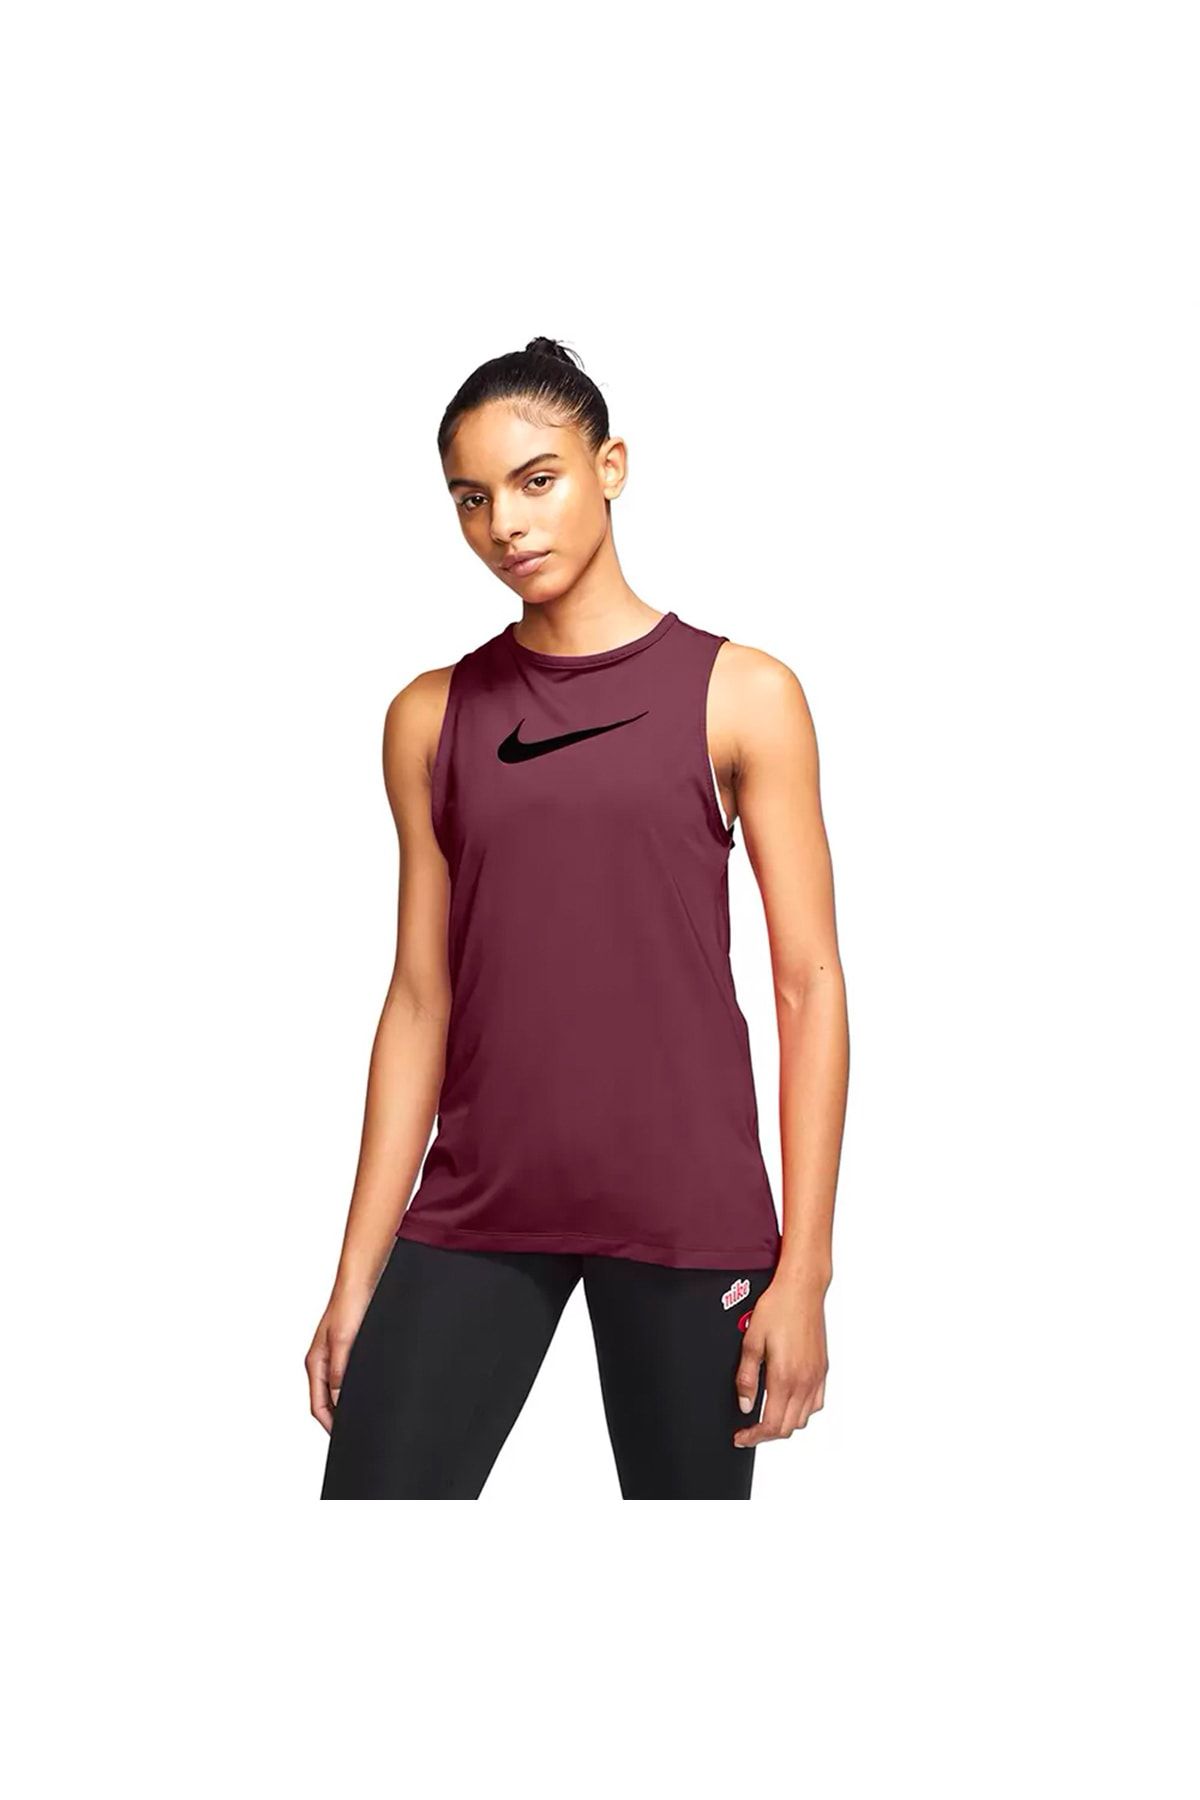 Nike Cj3771-638 Pro Kadın Atlet